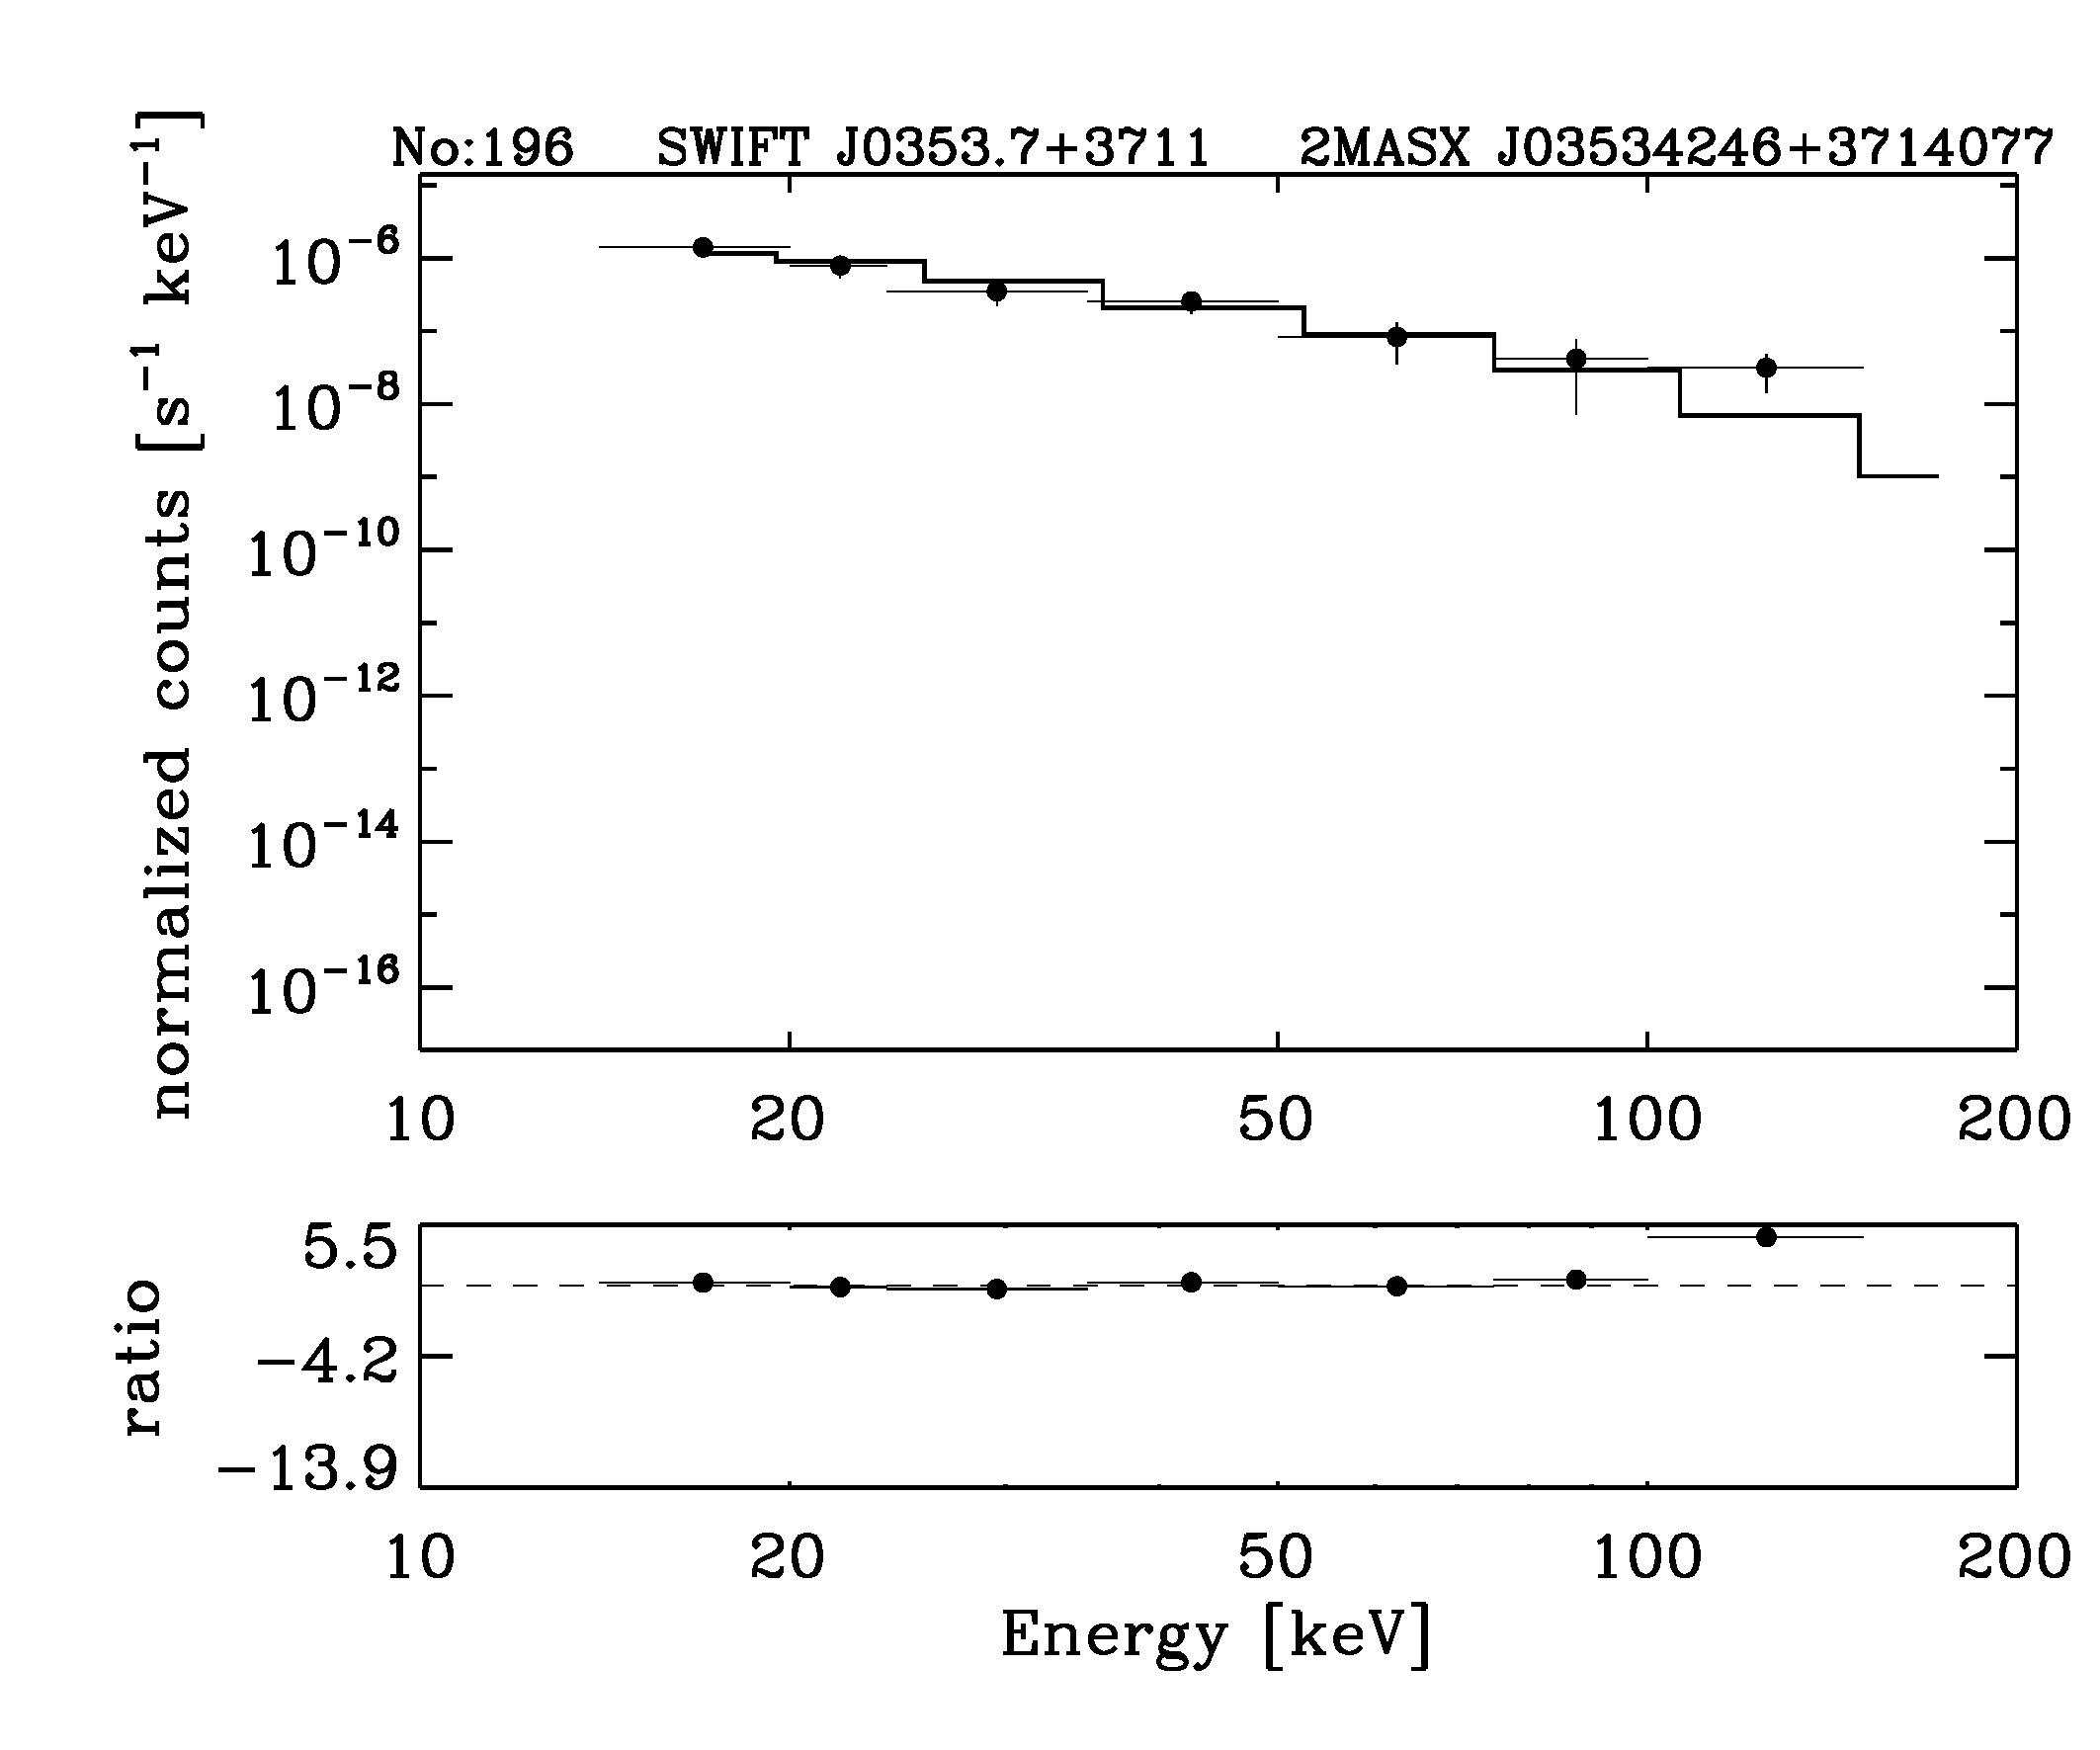 BAT Spectrum for SWIFT J0353.7+3711